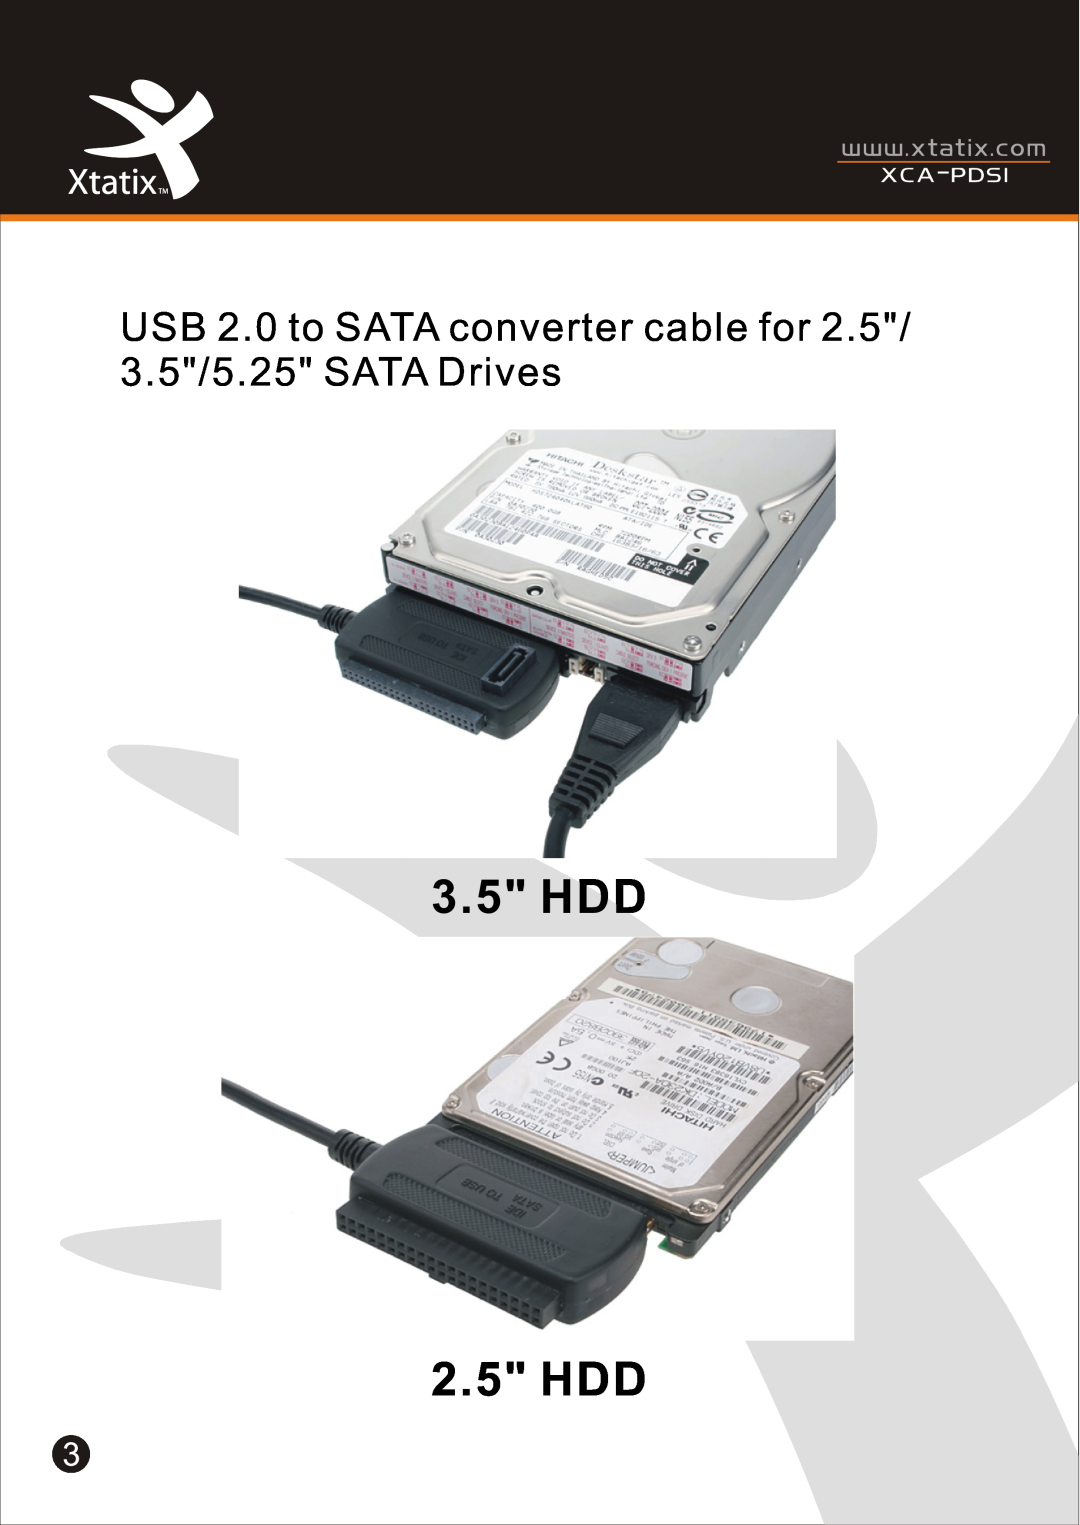 Xtatix XCA-PDSI user manual 3.5 HDD, 2.5 HDD, USB 2.0 to SATA converter cable for, 3.5/5.25 SATA Drives, Xca - Pdsi 